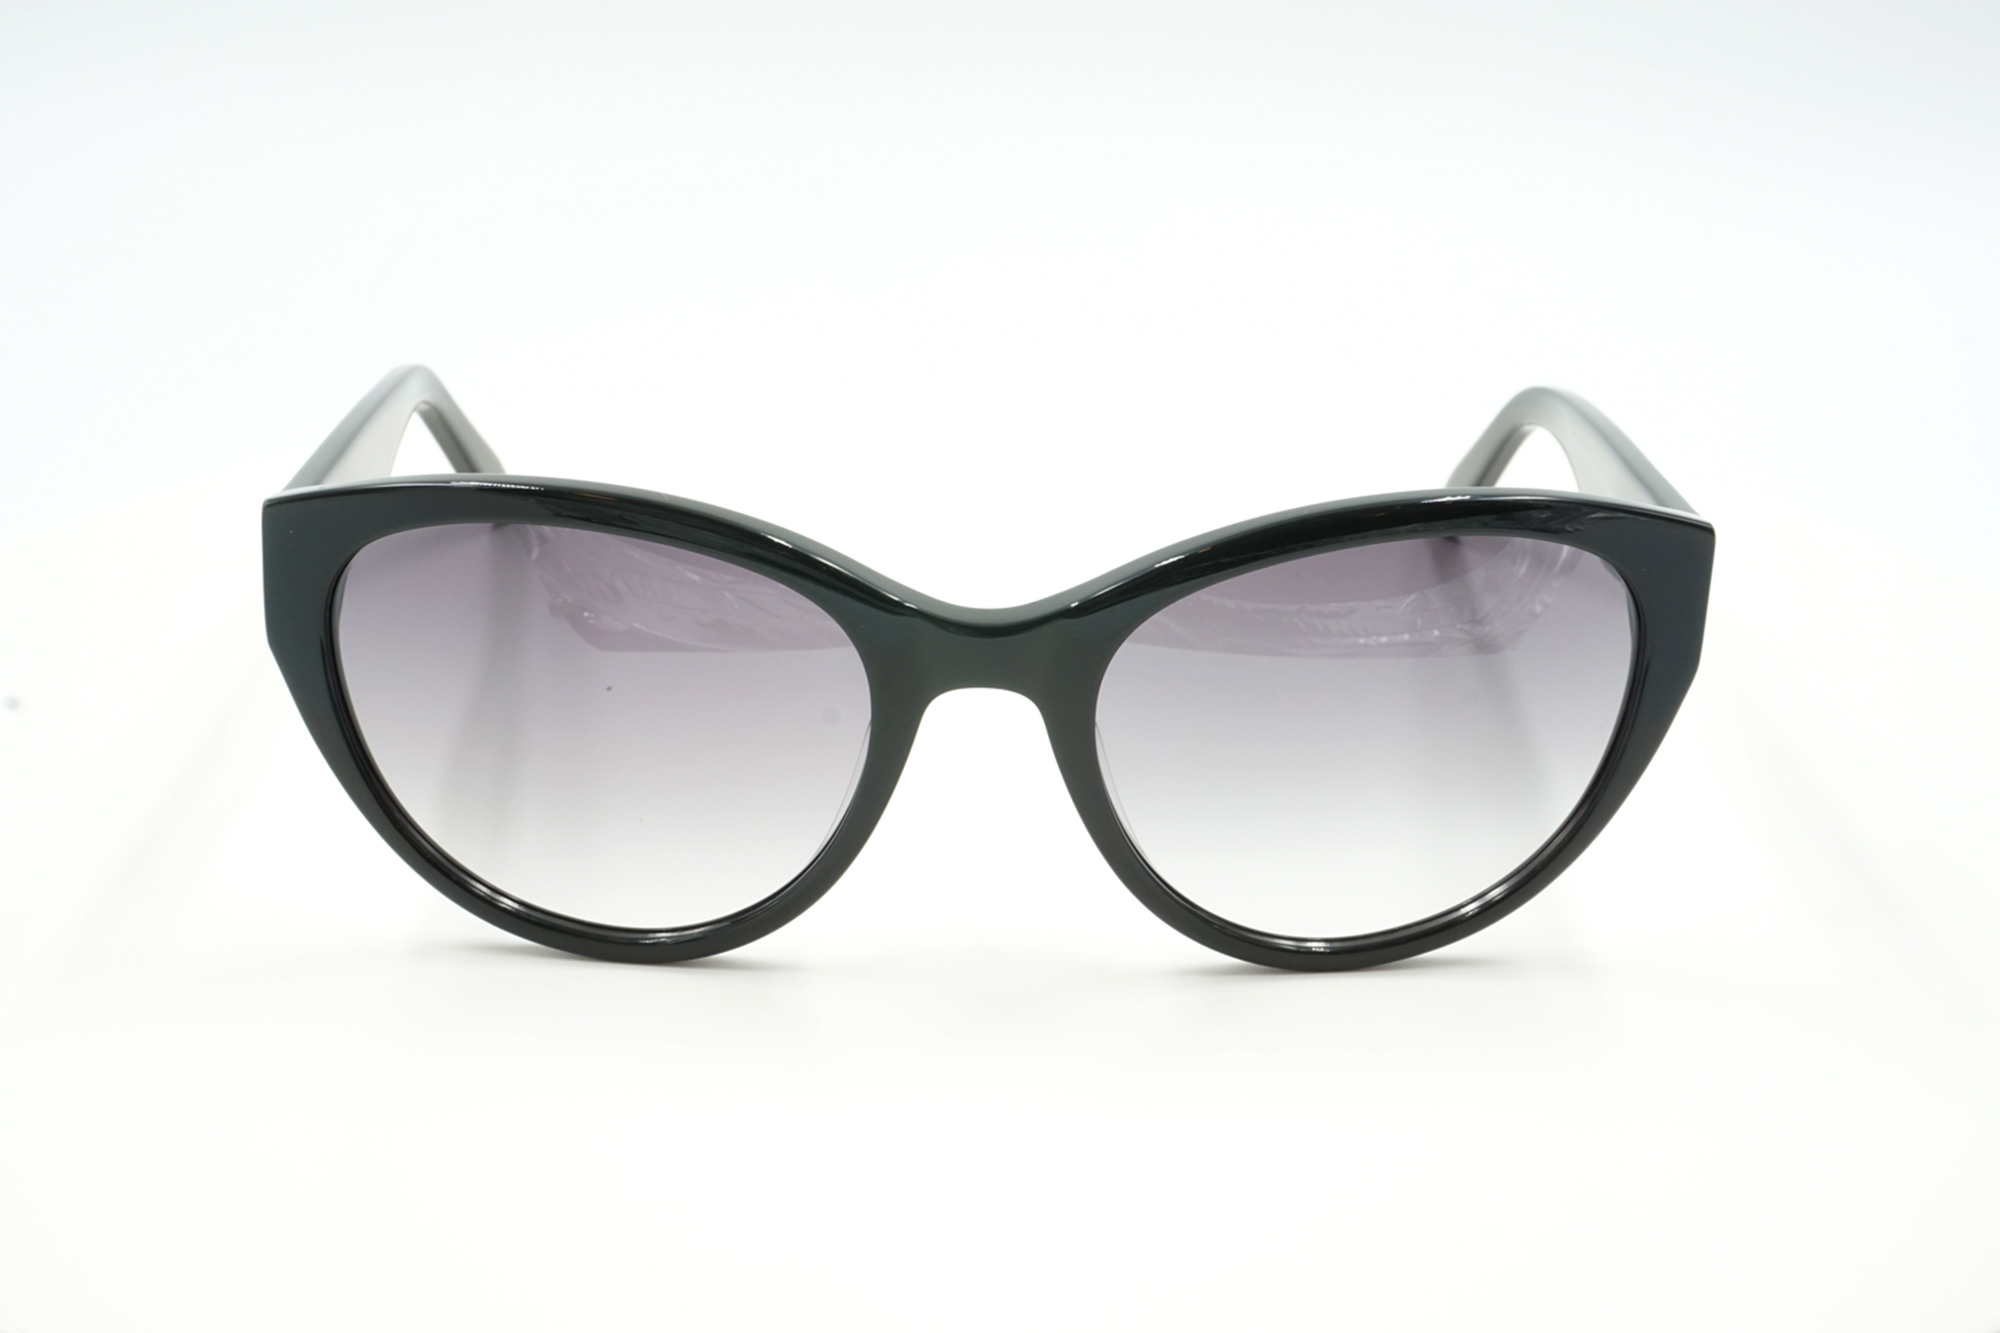 Sonnenbrille Care mit optischen Sonnengläsern